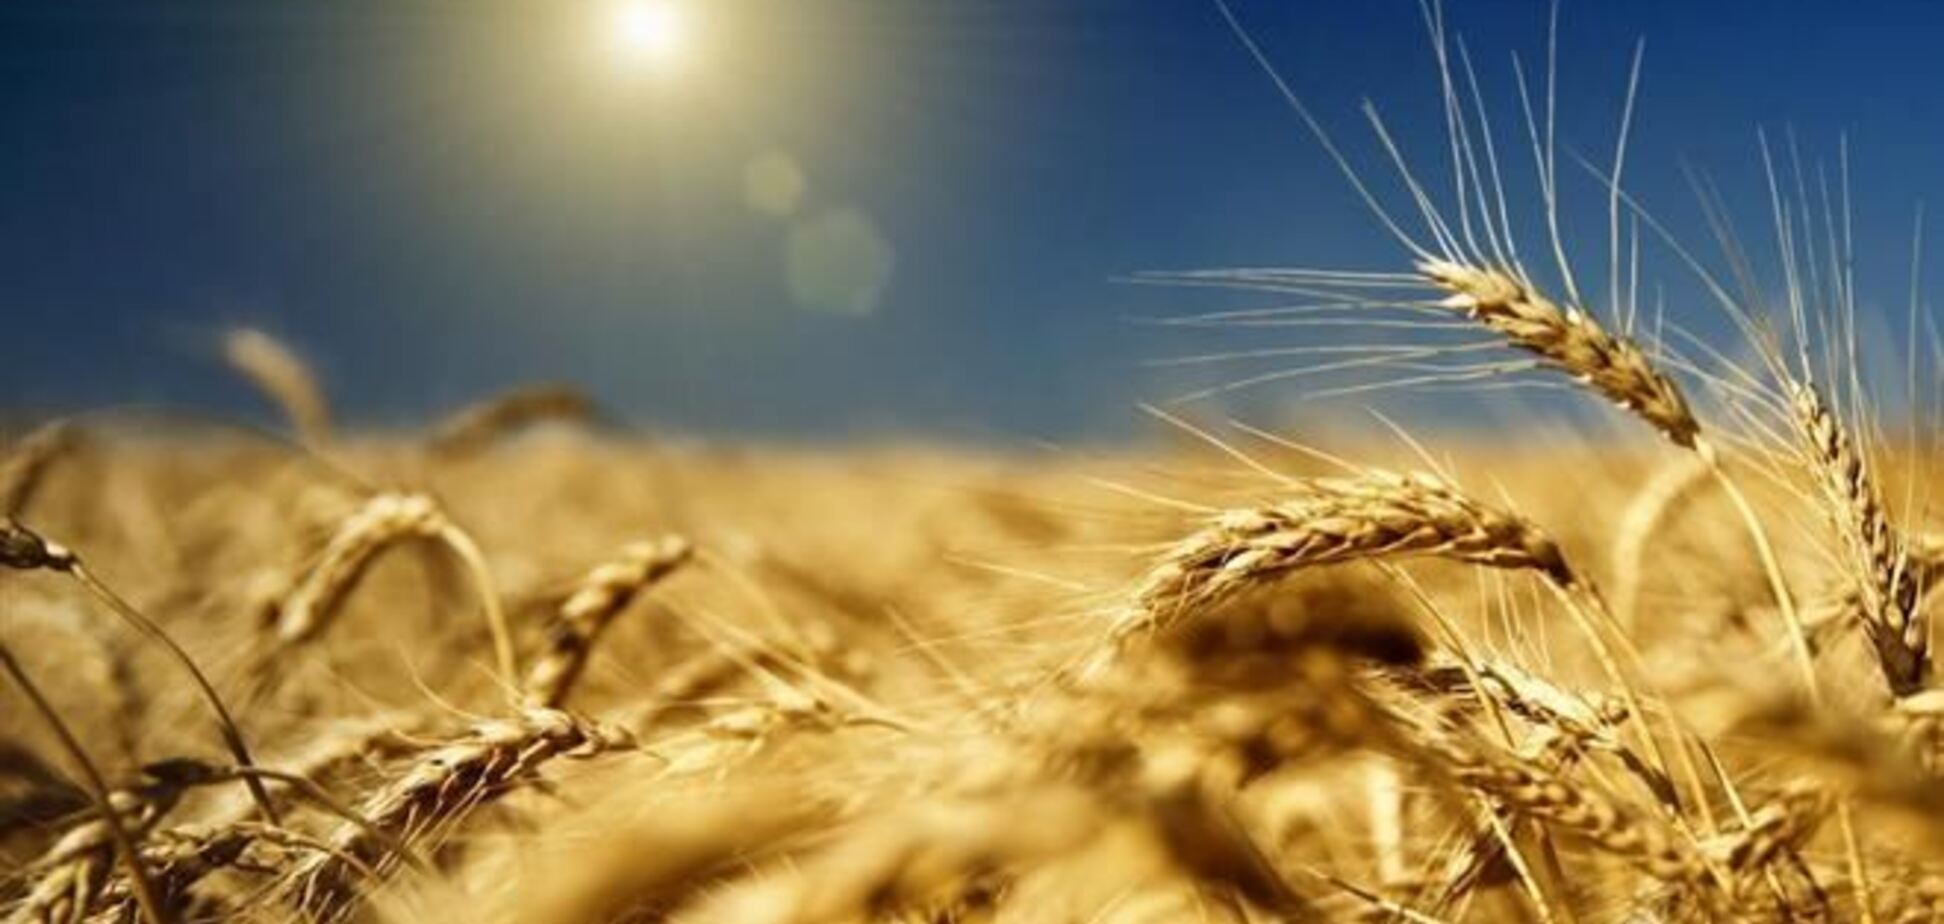 Присяжнюк: владельцы зерна, трейдеры и 'Укрзалізниця' слаженно работают в этом году